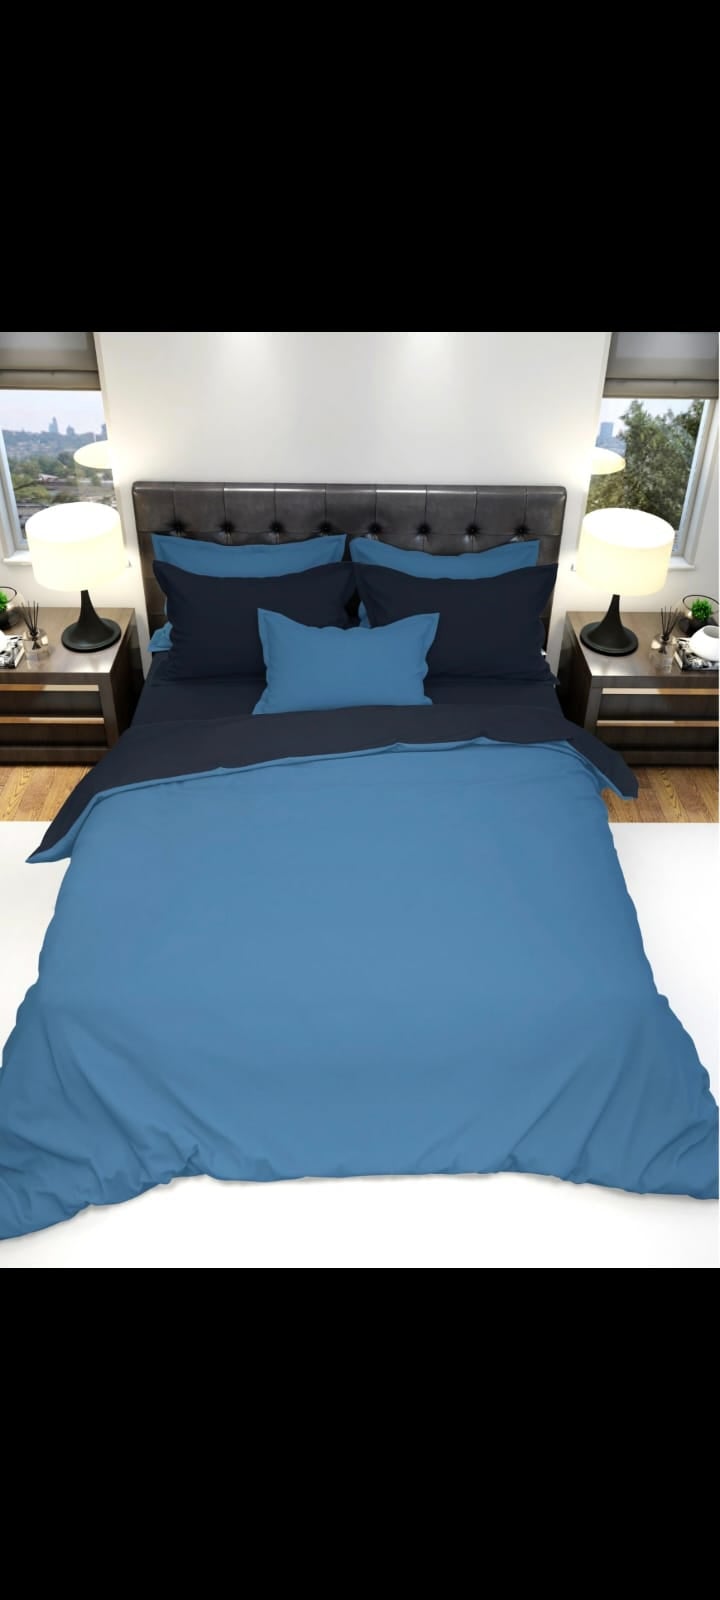 סט מצעים דו צדדי מיטה וחצי איכותי פרקל בעל צפיפות חוטים גבוהה מאוד סדין כחול כהה